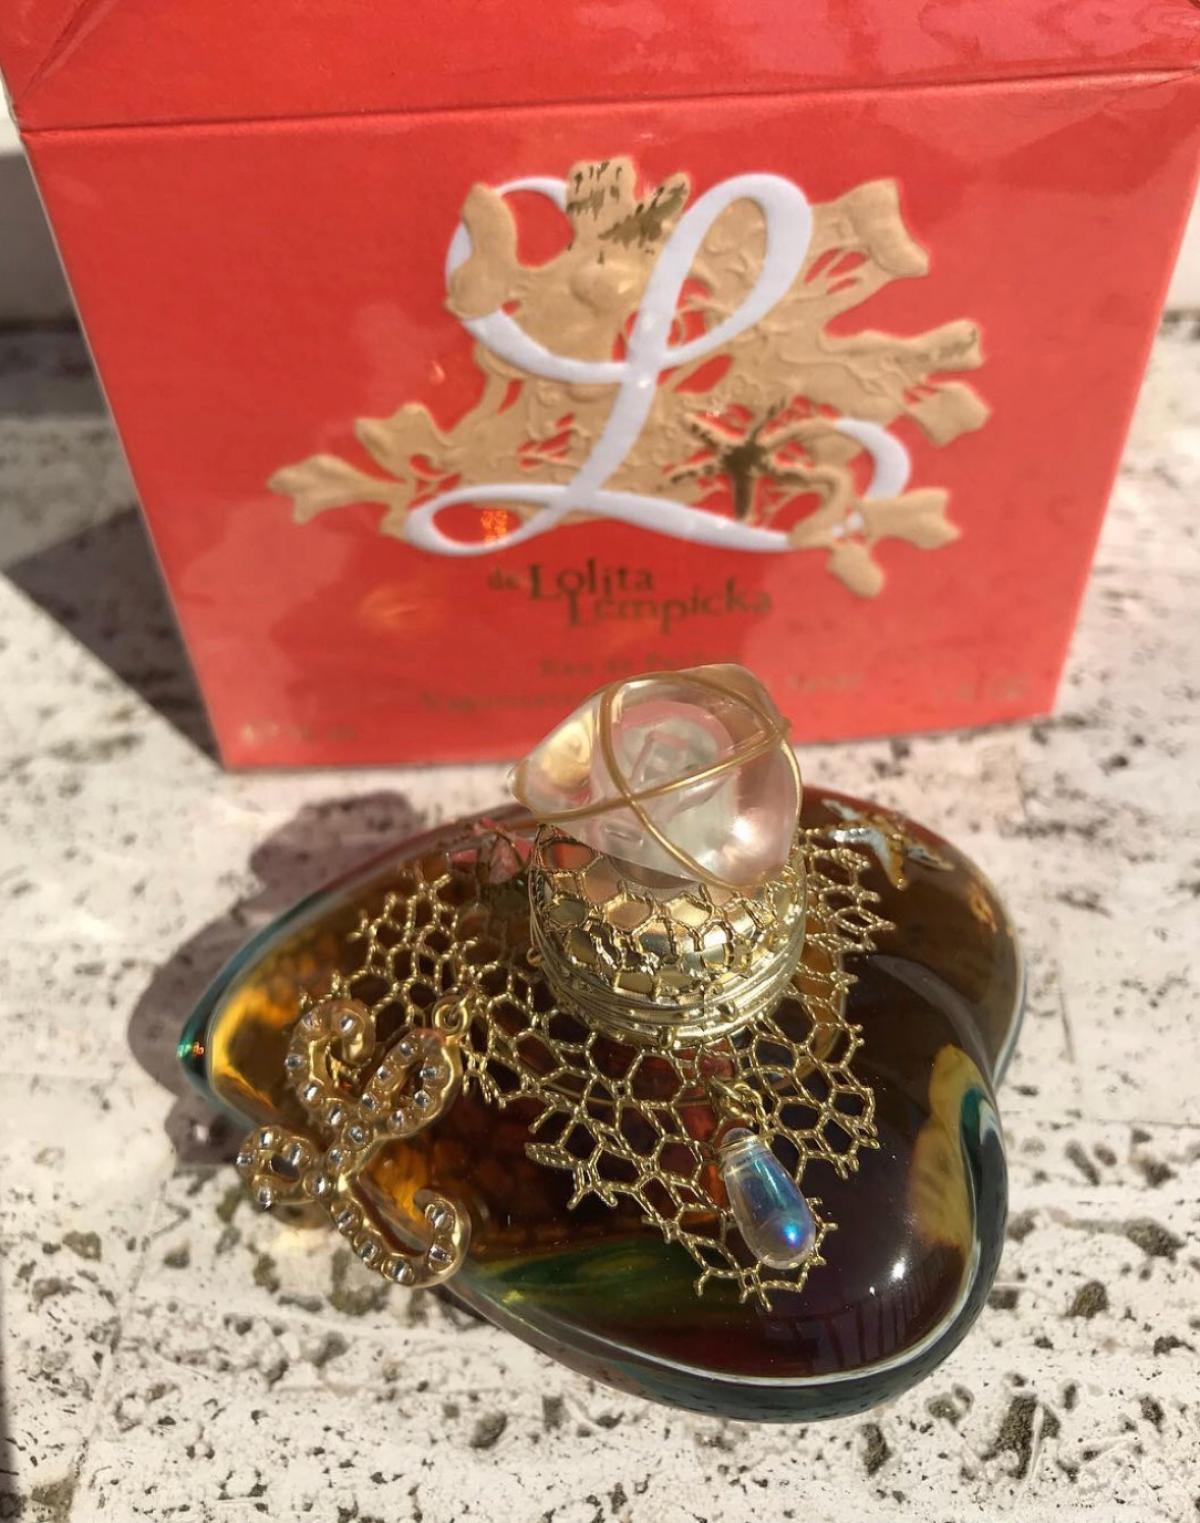 L de Lolita Lempicka Lolita Lempicka perfume - a fragrance for women 2006